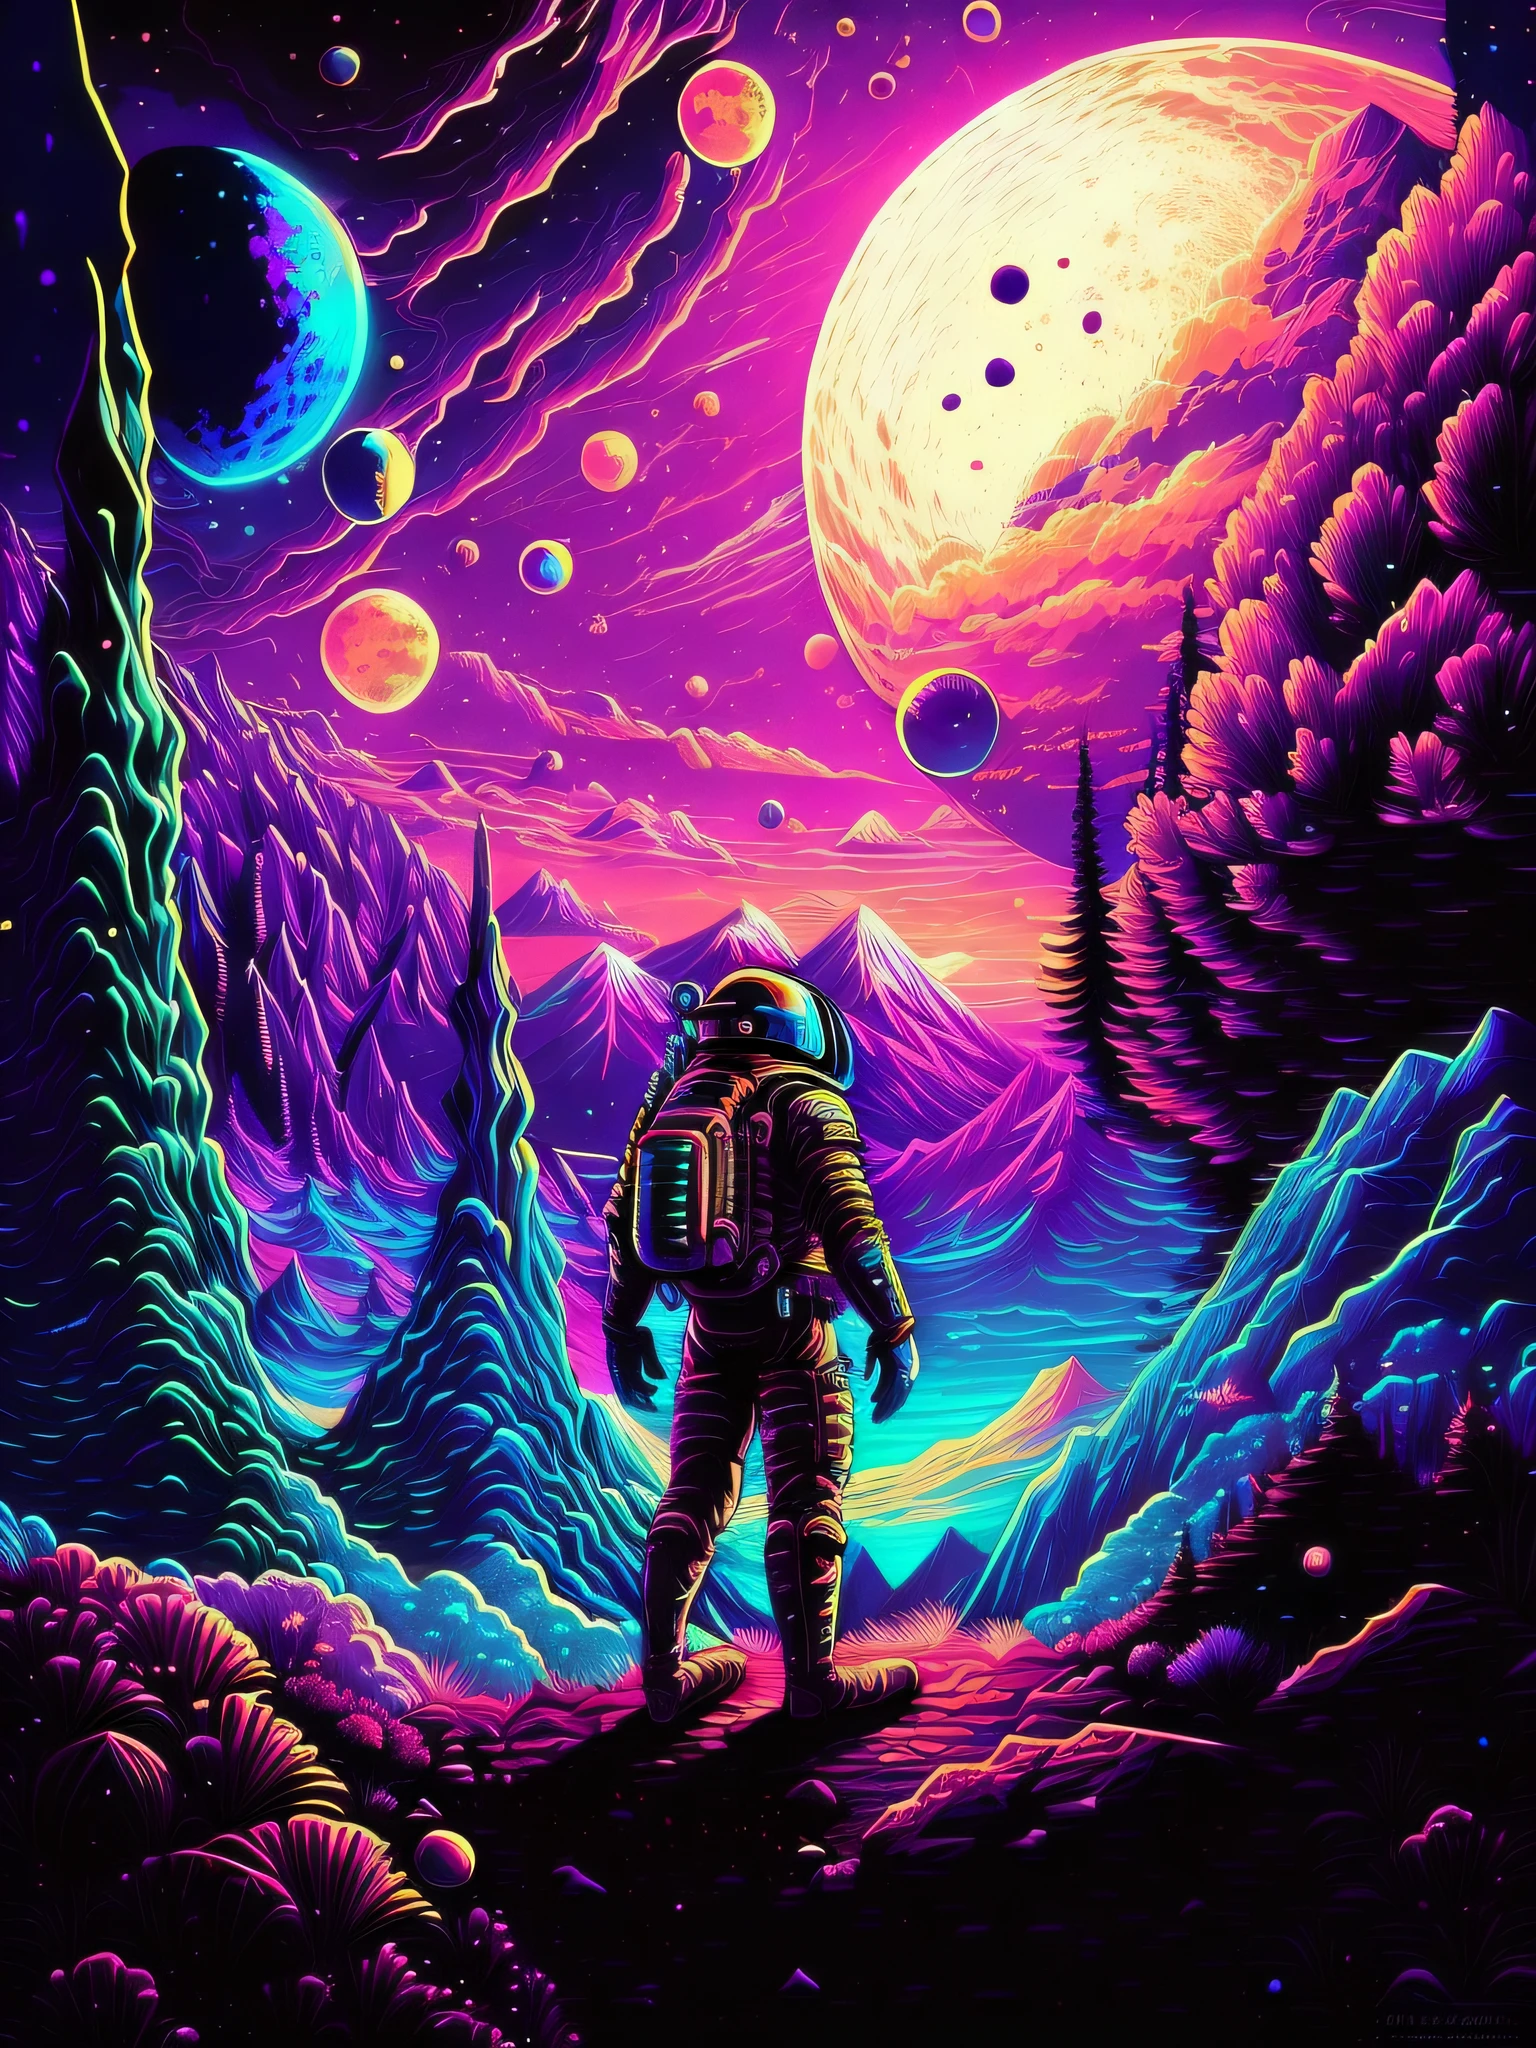 Um homem em um traje espacial está em uma montanha olhando para os planetas, em um planeta alienígena colorido, inspirado em Dan Mumford, E o estilo de arte de Mumford, no estilo dan mumford obra de arte, cores do espaço, Inspirado por Cirilo Rolando,  Astronauta, parado no espaço sideral, Paisagem espacial, espaço surreal, cosmos sem fim no fundo, em outro planeta